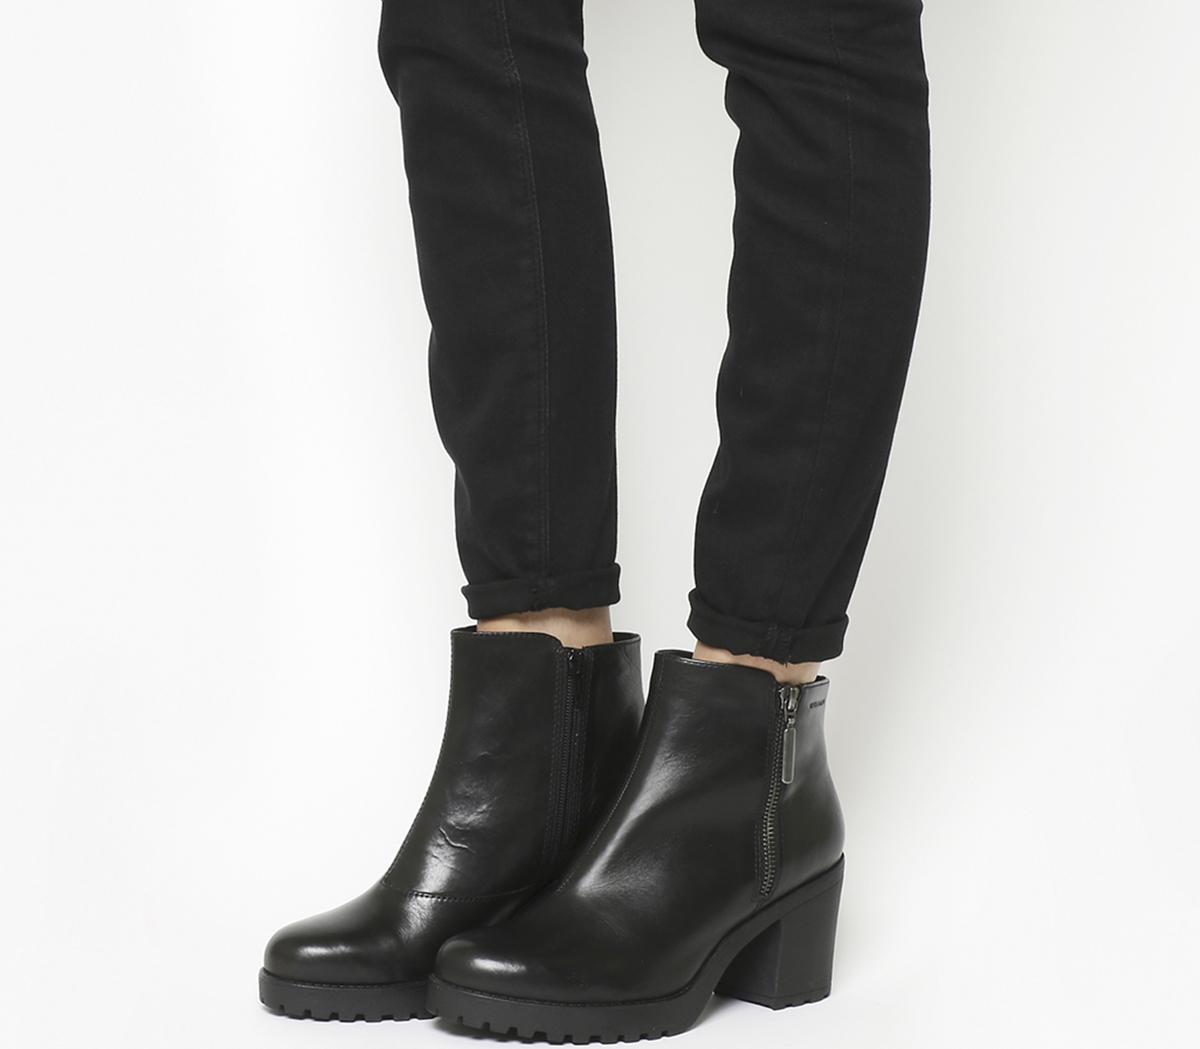 Vagabond Grace Side Zip Black Leather Ankle Boots